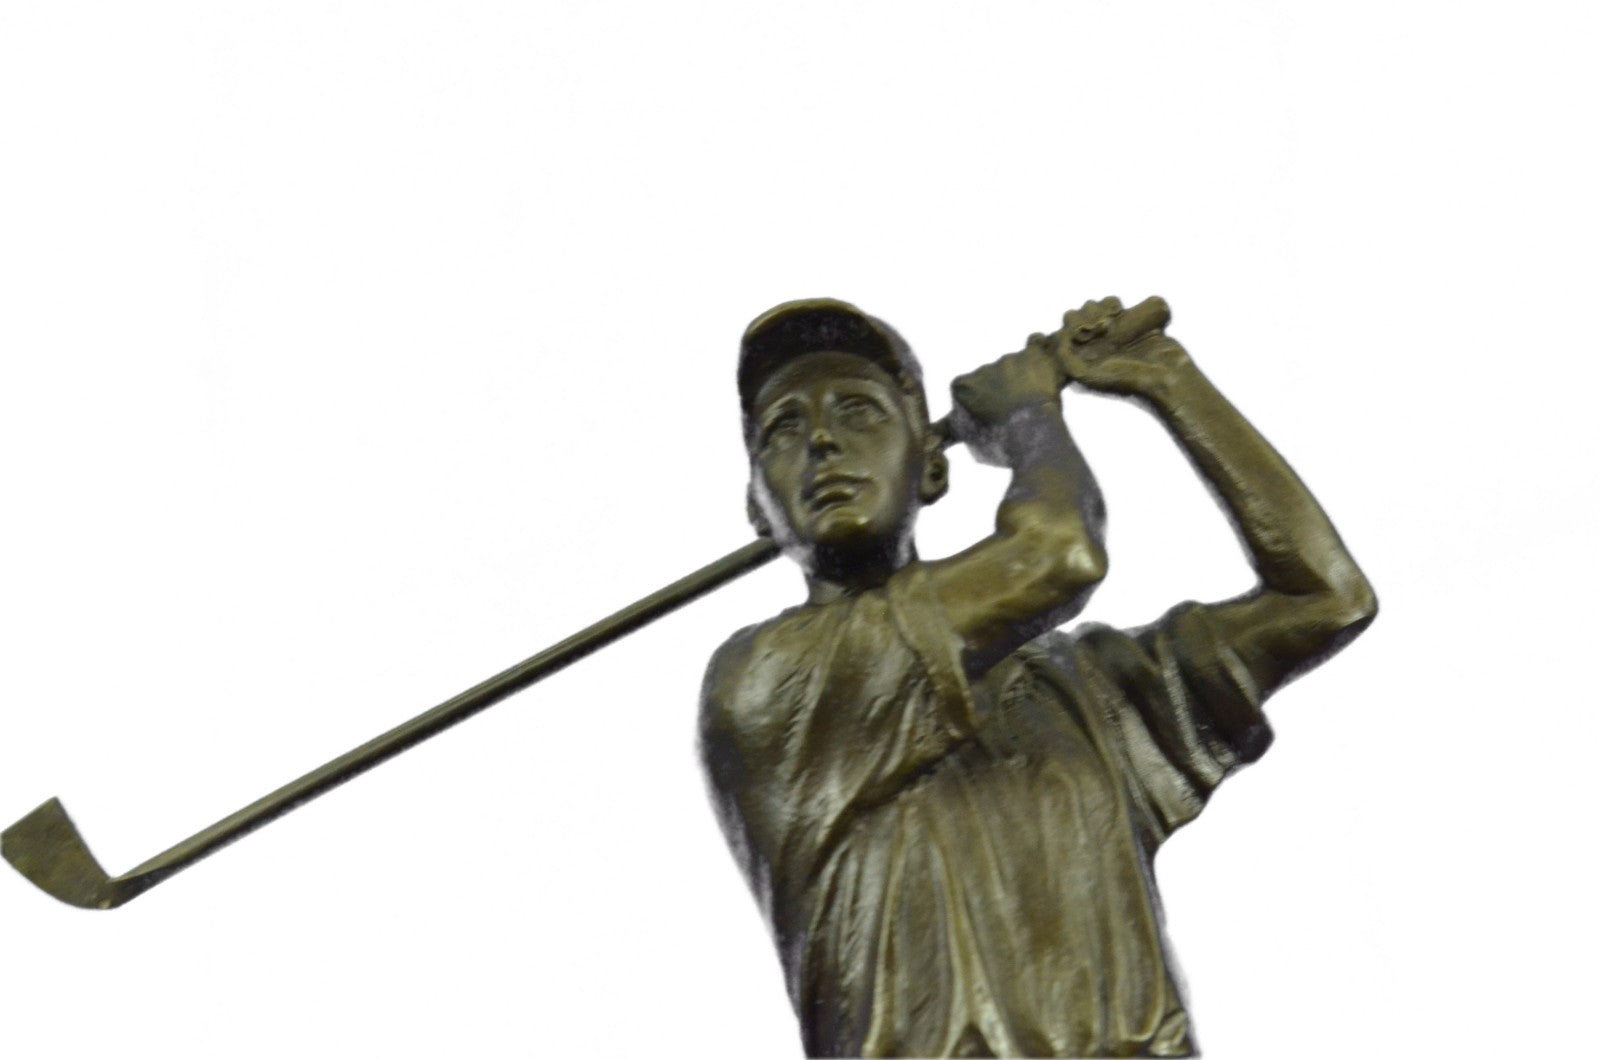 CLEARANCE Bronze Sculpture Statue Golfer Golf Male Golfing Trophy Deal